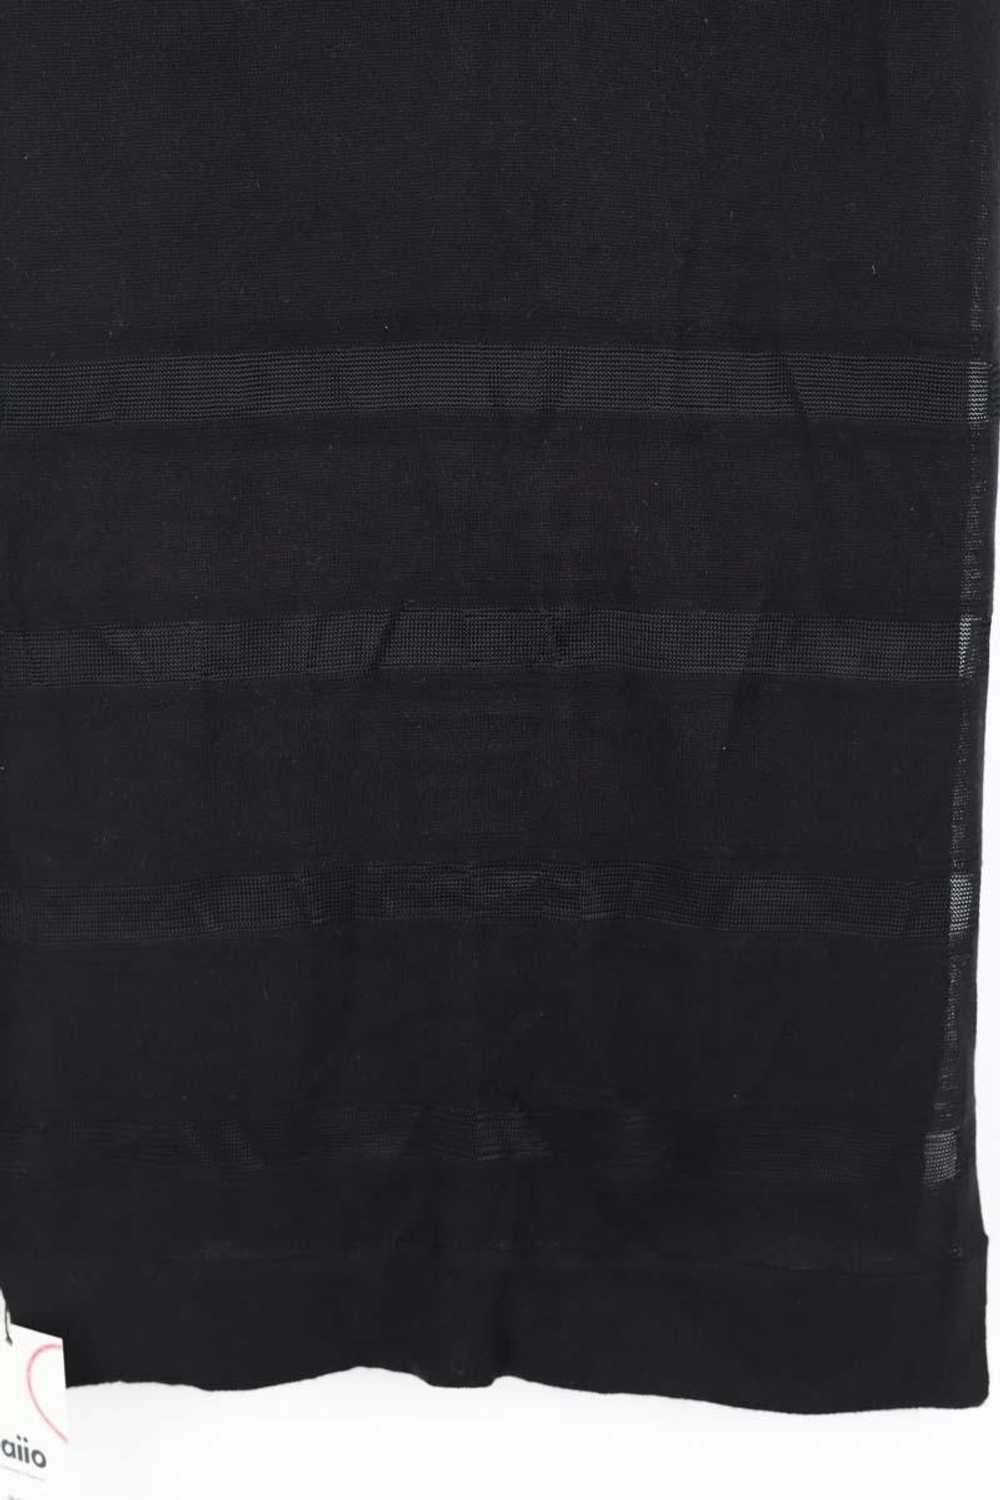 Circular Clothing Étole en laine Kenzo noir. - image 2